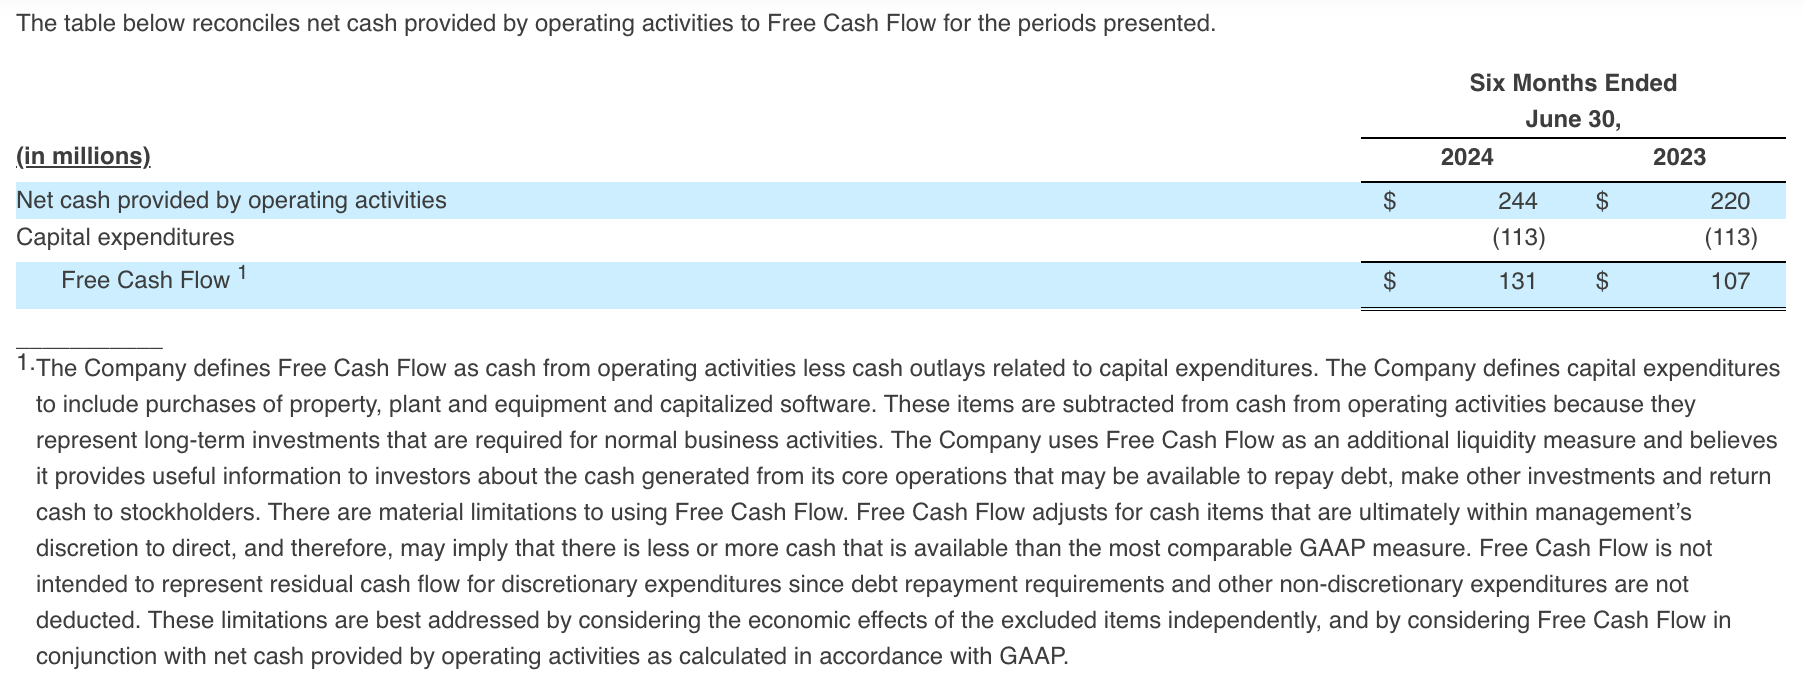 Free Cash Flow Q2